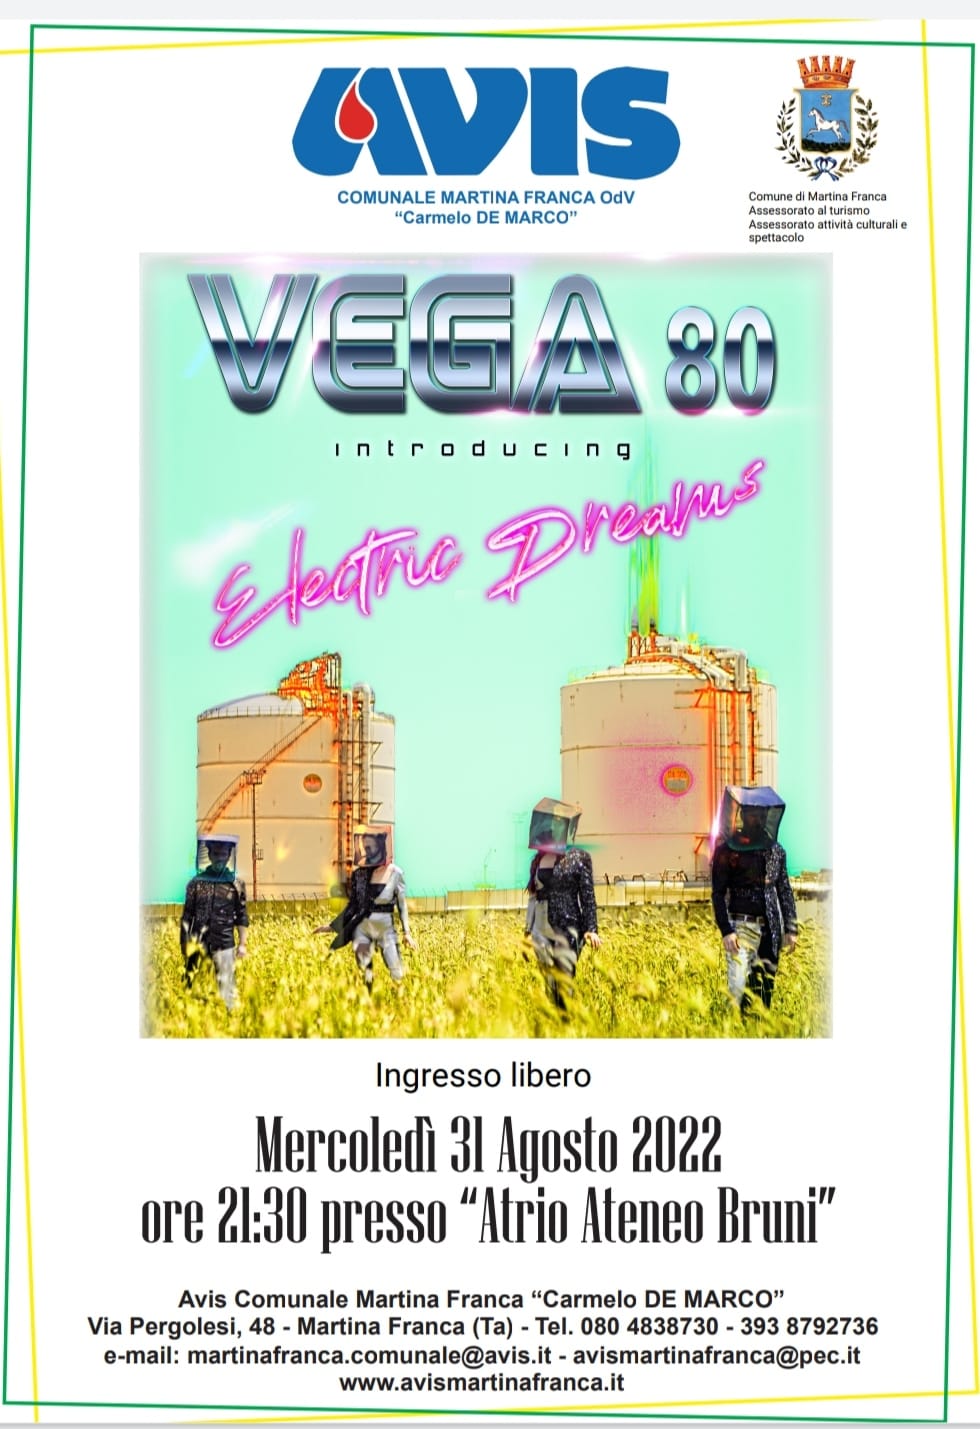 Vega 80